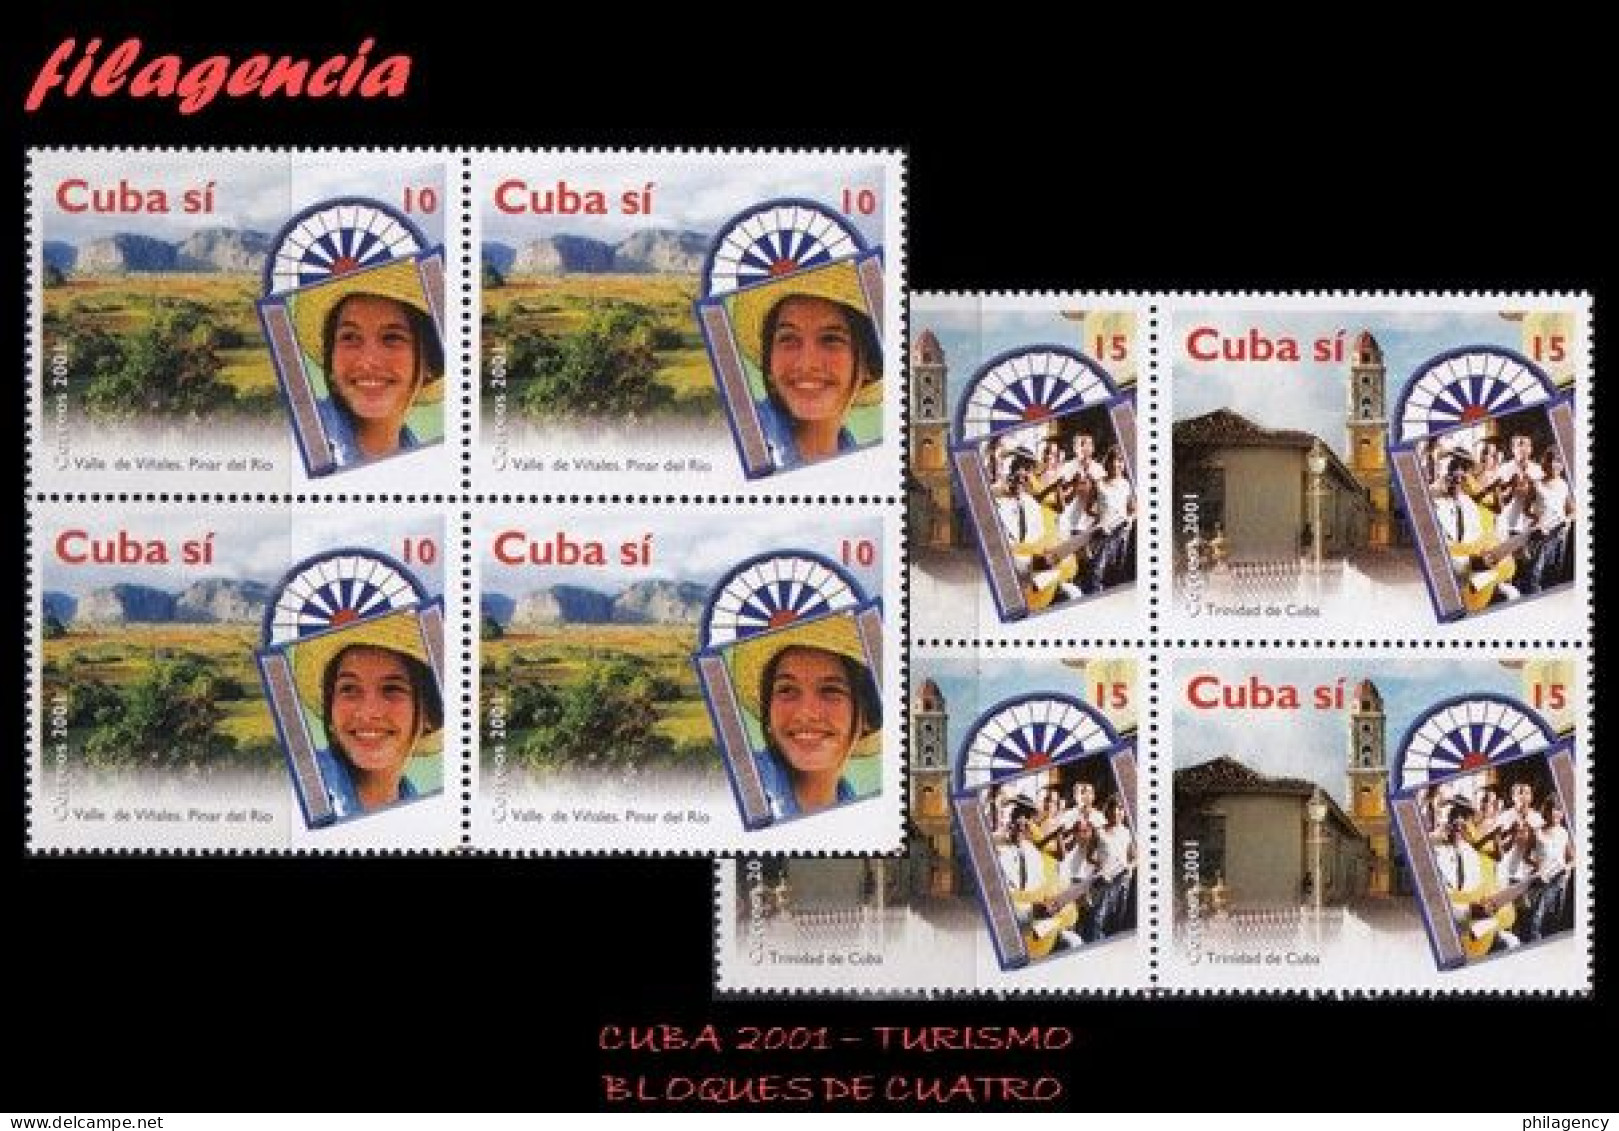 CUBA. BLOQUES DE CUATRO. 2001-17 TURISMO. PAISAJES DE CUBA - Nuovi